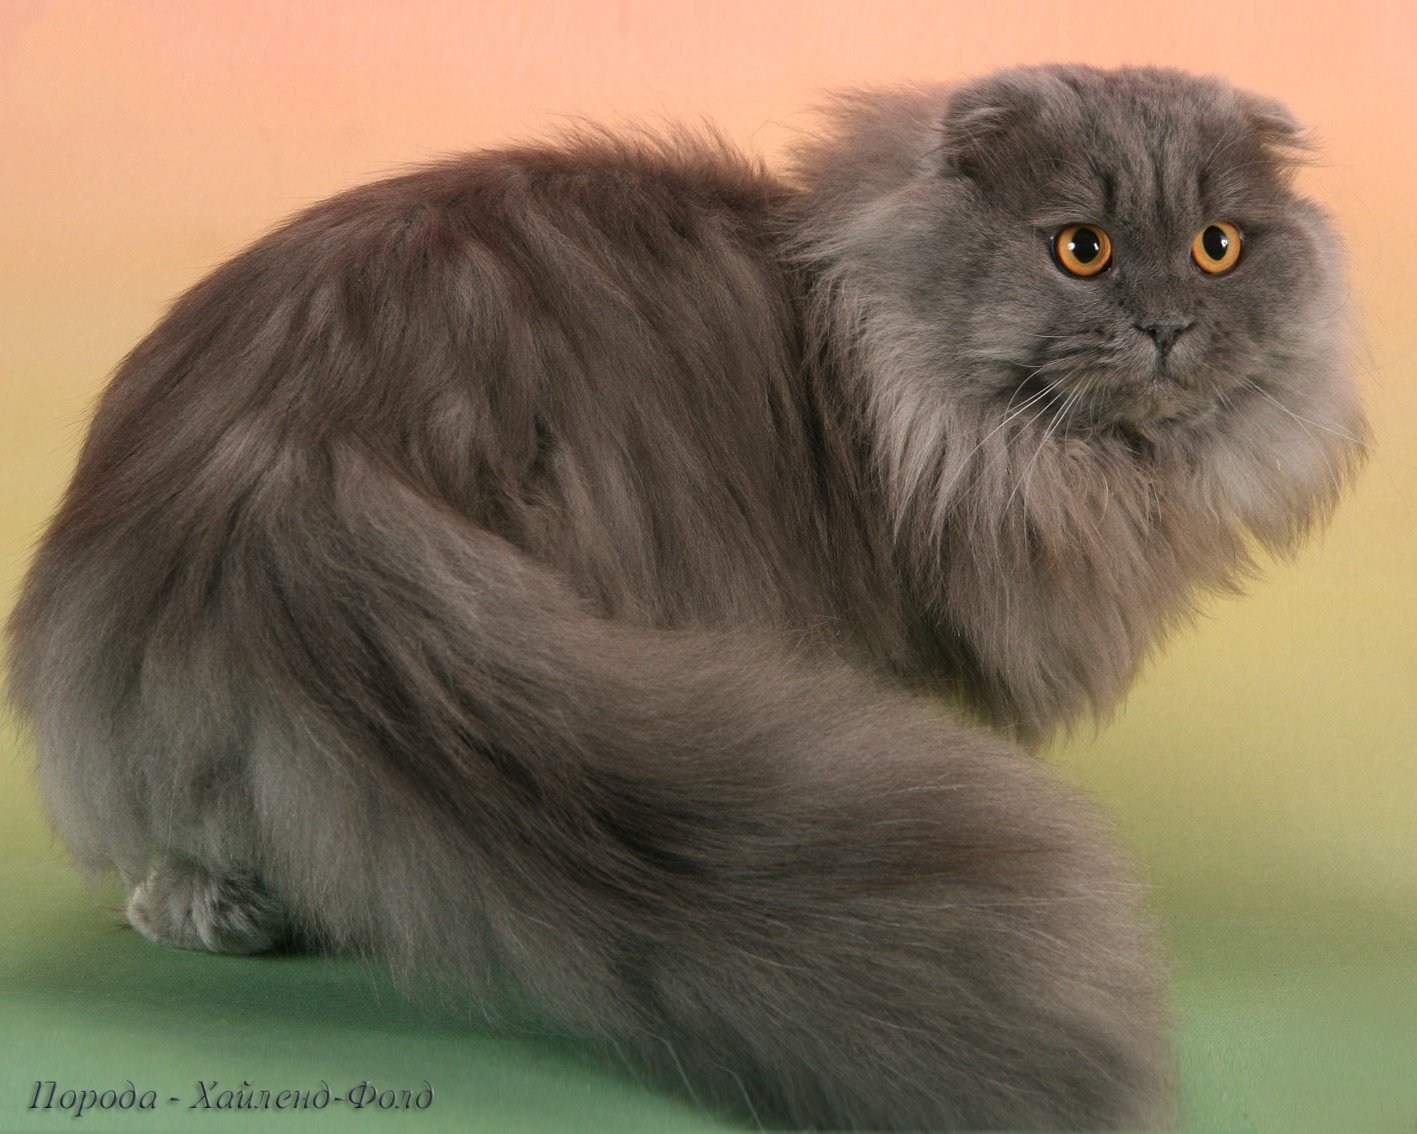 Шотландского длинношерстного кота - картинки и фото koshka.top